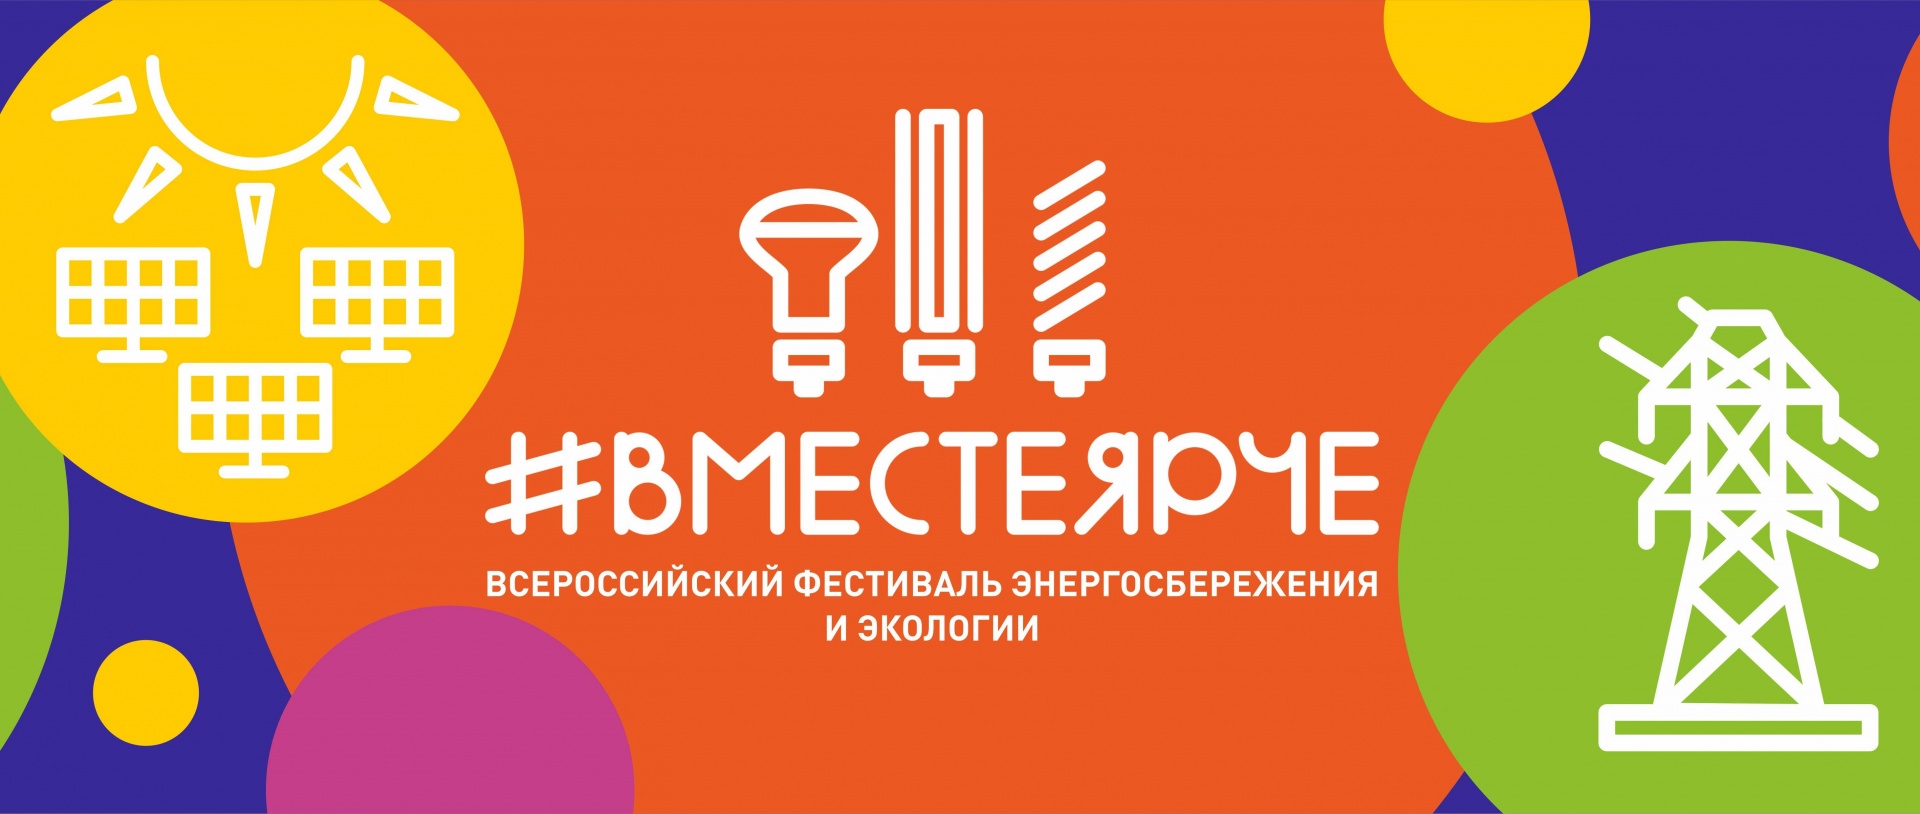 Всероссийского фестиваля экологии и энергосбережения #ВместеЯрче.